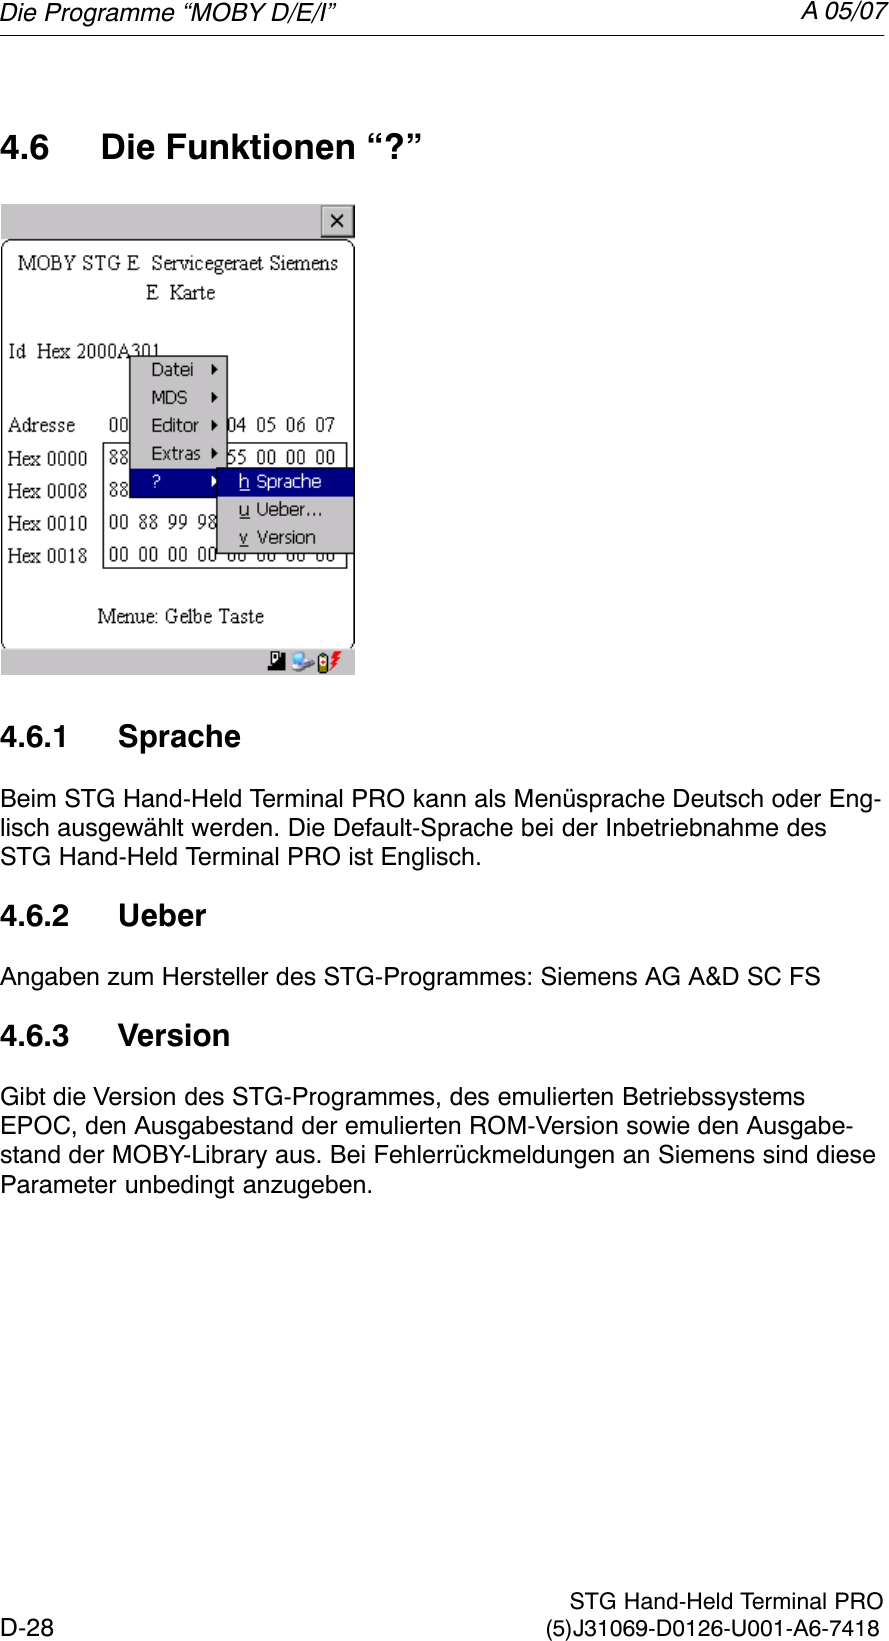 A 05/07D-28 STG Hand-Held Terminal PRO(5)J31069-D0126-U001-A6-74184.6 Die Funktionen “?”4.6.1 SpracheBeim STG Hand-Held Terminal PRO kann als Menüsprache Deutsch oder Eng-lisch ausgewählt werden. Die Default-Sprache bei der Inbetriebnahme desSTG Hand-Held Terminal PRO ist Englisch.4.6.2 UeberAngaben zum Hersteller des STG-Programmes: Siemens AG A&amp;D SC FS4.6.3 VersionGibt die Version des STG-Programmes, des emulierten BetriebssystemsEPOC, den Ausgabestand der emulierten ROM-Version sowie den Ausgabe-stand der MOBY-Library aus. Bei Fehlerrückmeldungen an Siemens sind dieseParameter unbedingt anzugeben.Die Programme “MOBY D/E/I”